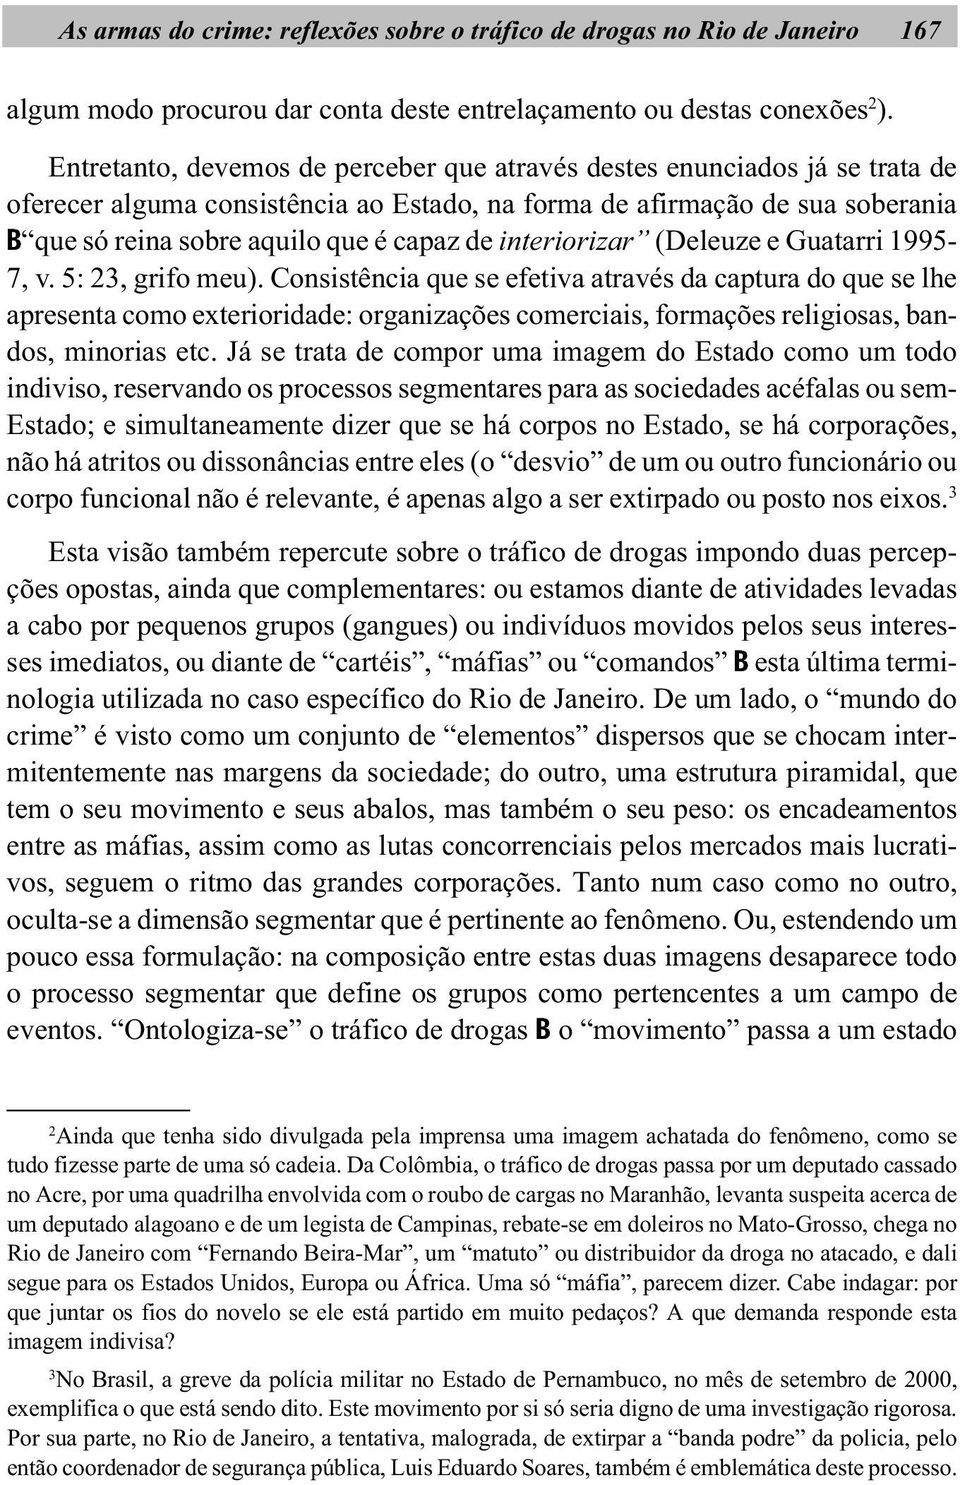 interiorizar (Deleuze e Guatarri 1995-7, v. 5: 23, grifo meu).